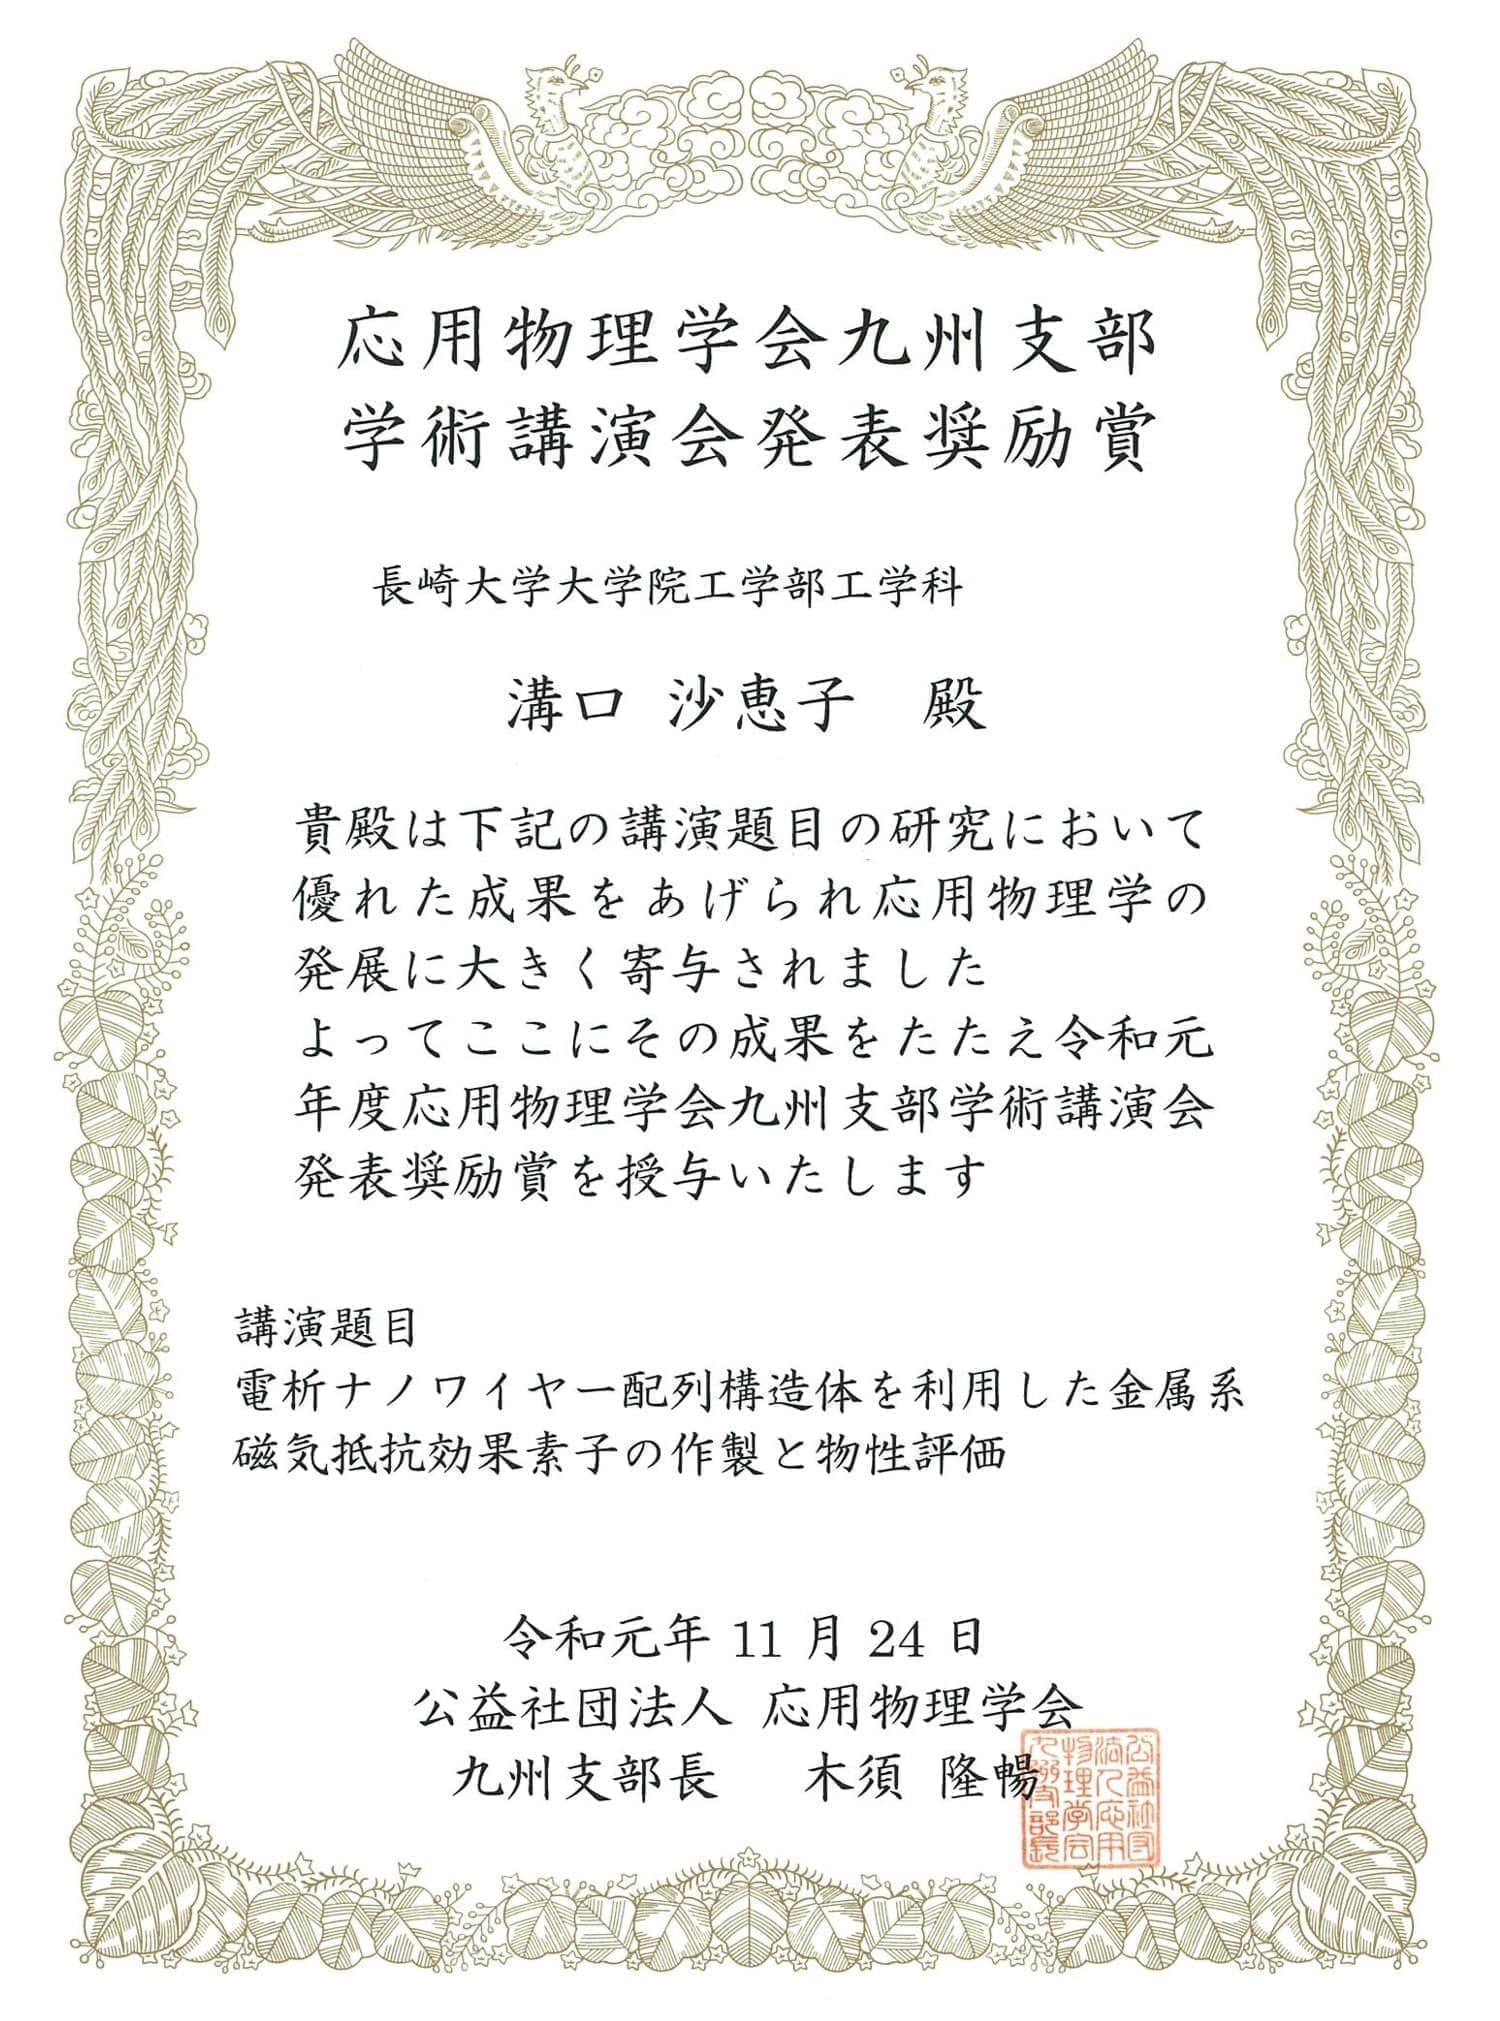 溝口沙恵子さん(M1)が、応用物理学会九州支部学術講演会において、発表奨励賞を受賞しました。2019/11/24